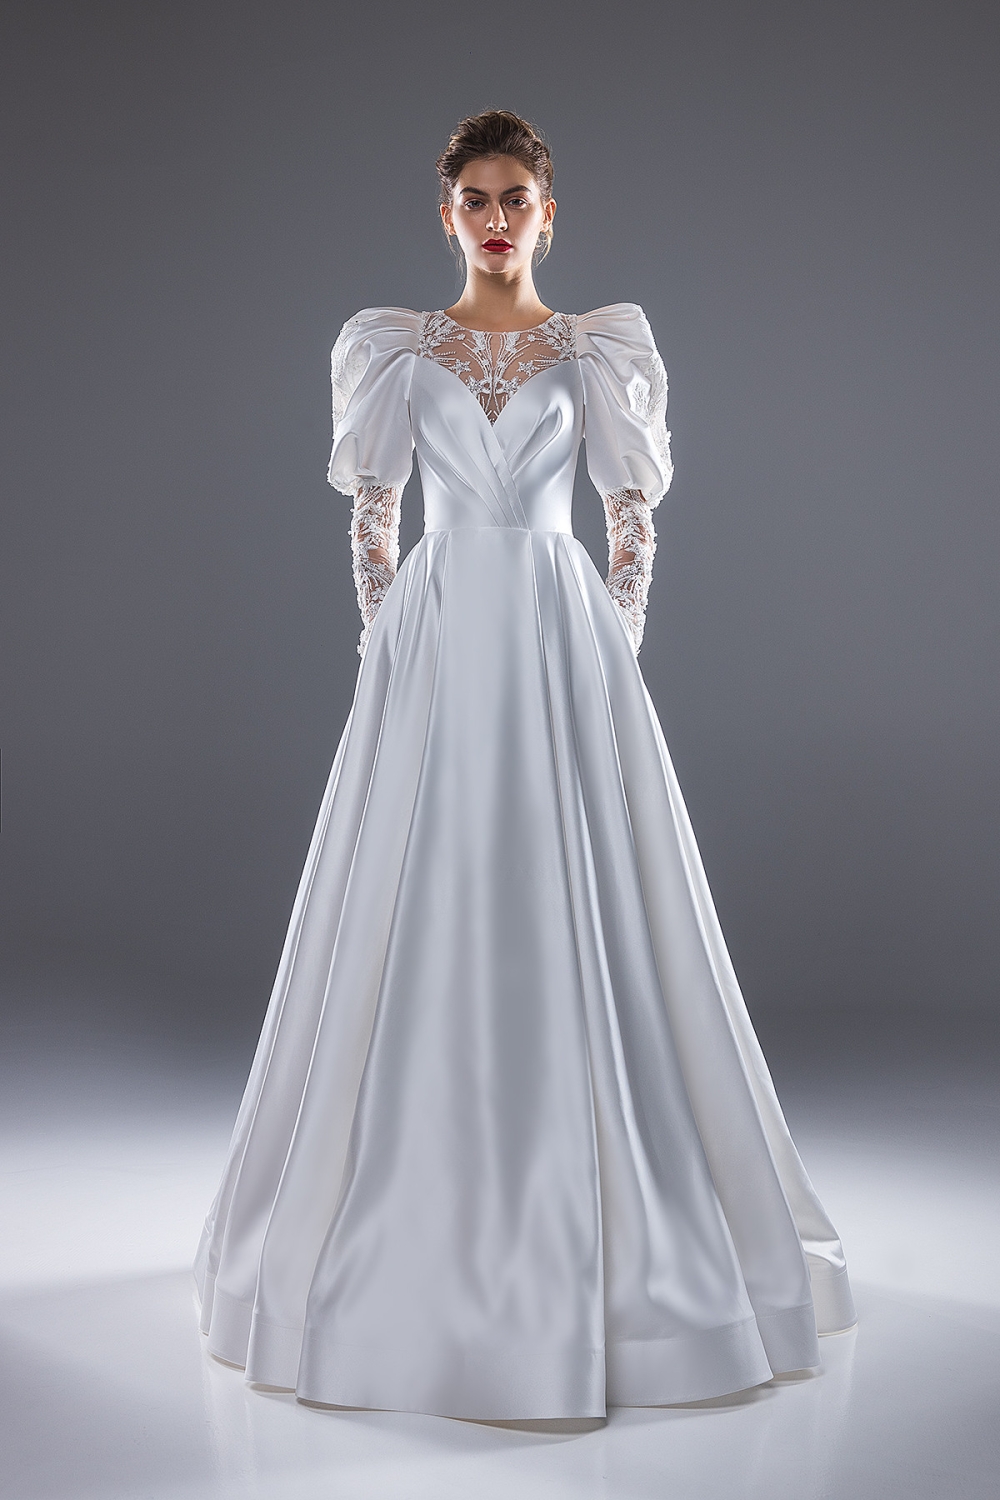 Свадебное платье Арабелла от Unona